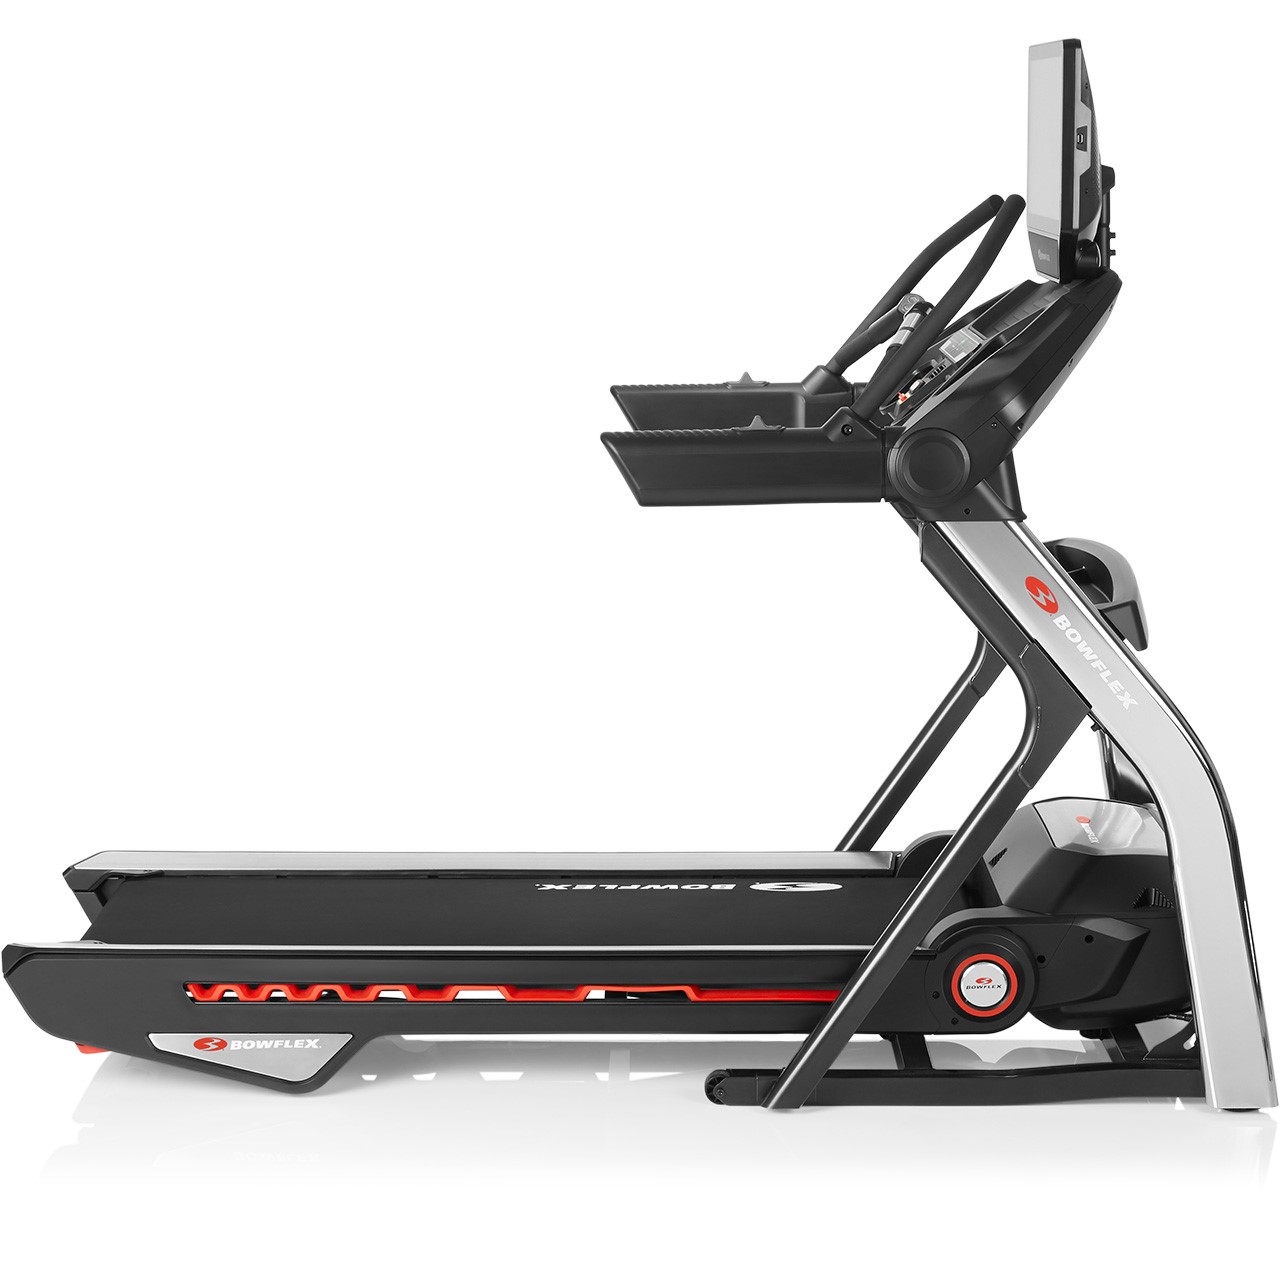 Bowflex Treadmill T56